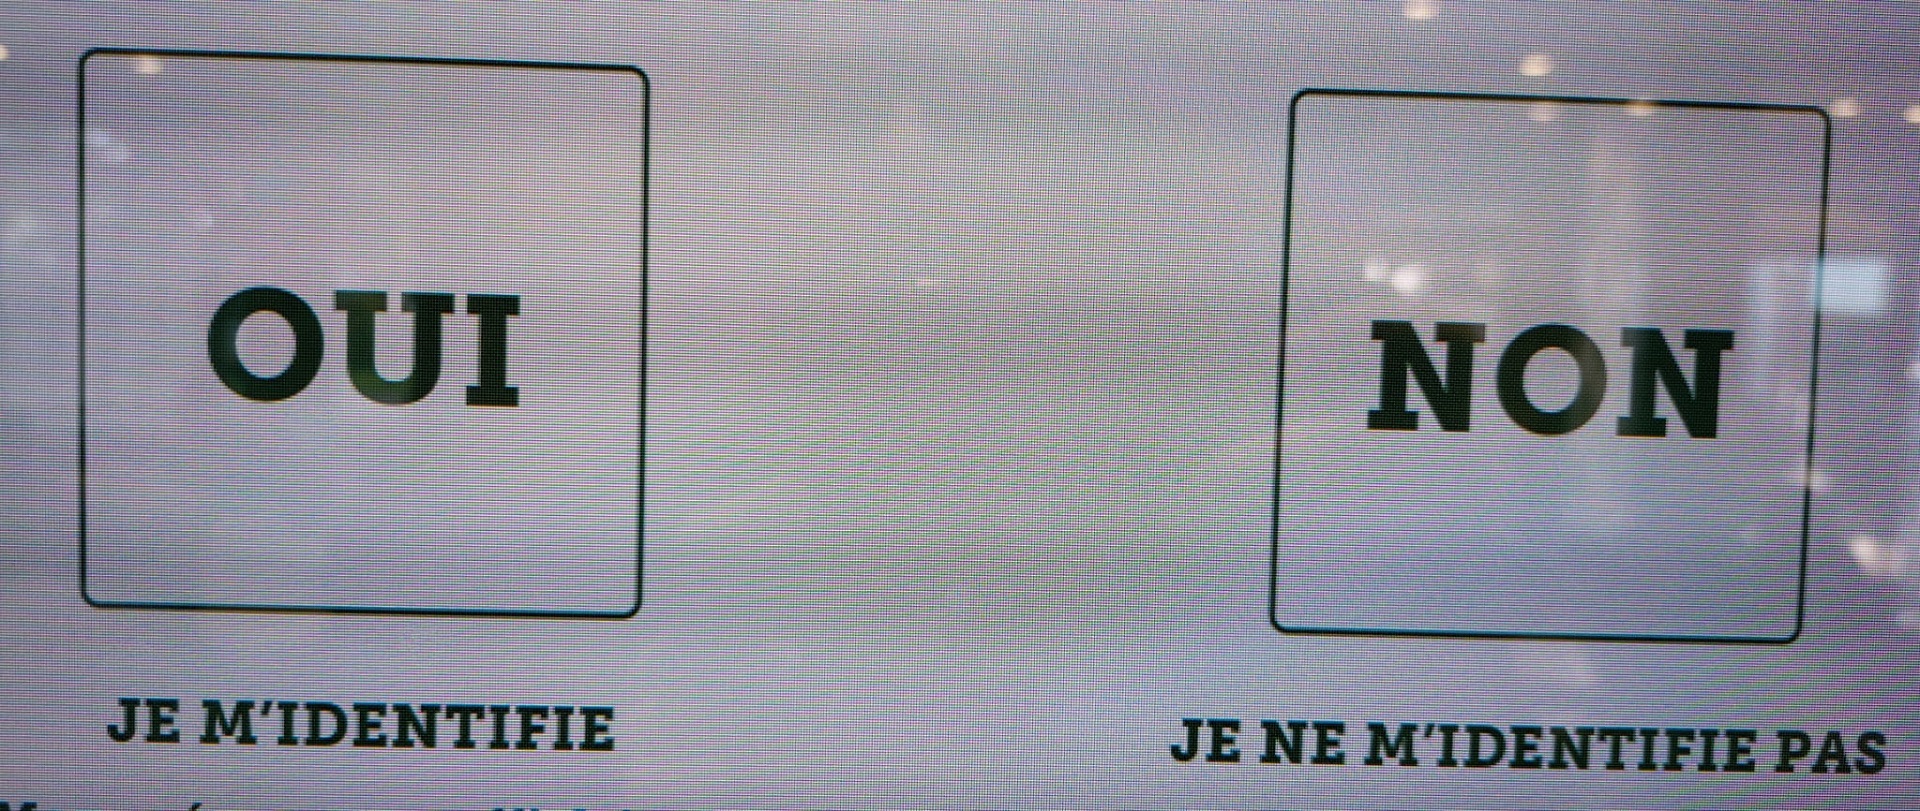 La primera pregunta en la pantalla de McDonald's en Francia: "me identifico" / "no me identifico"